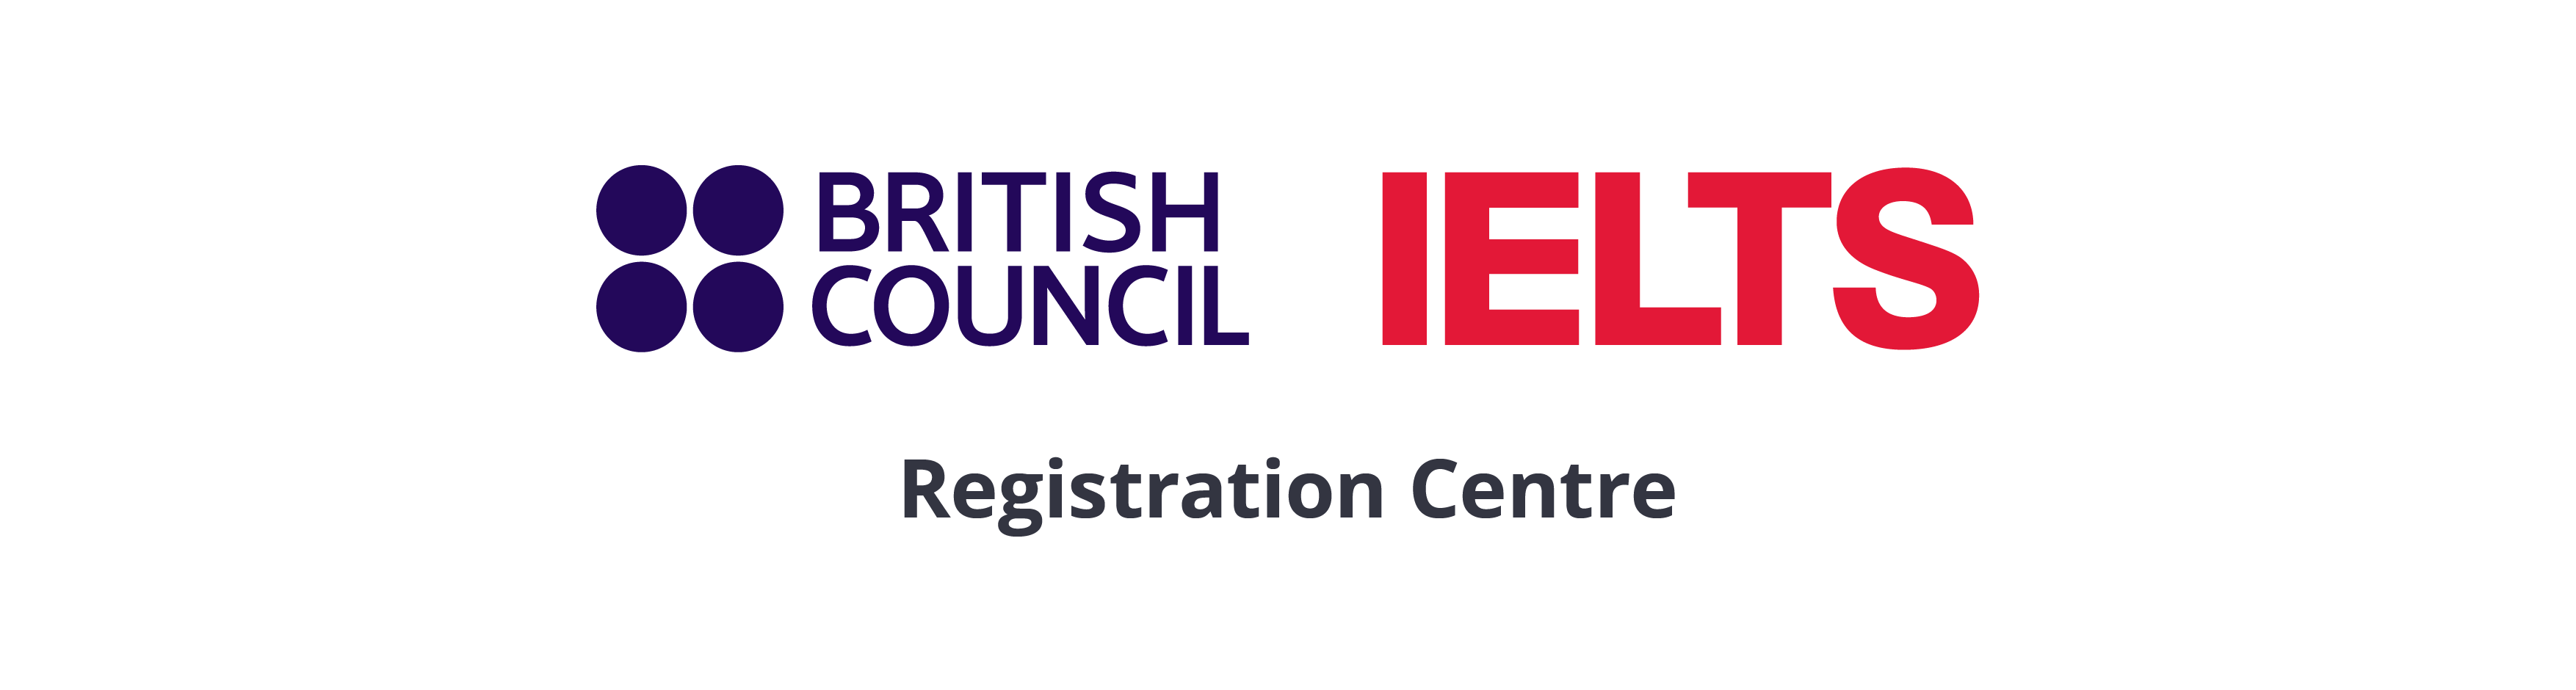 BC IELTS Reg Centre Logo Side By Side Screen 1